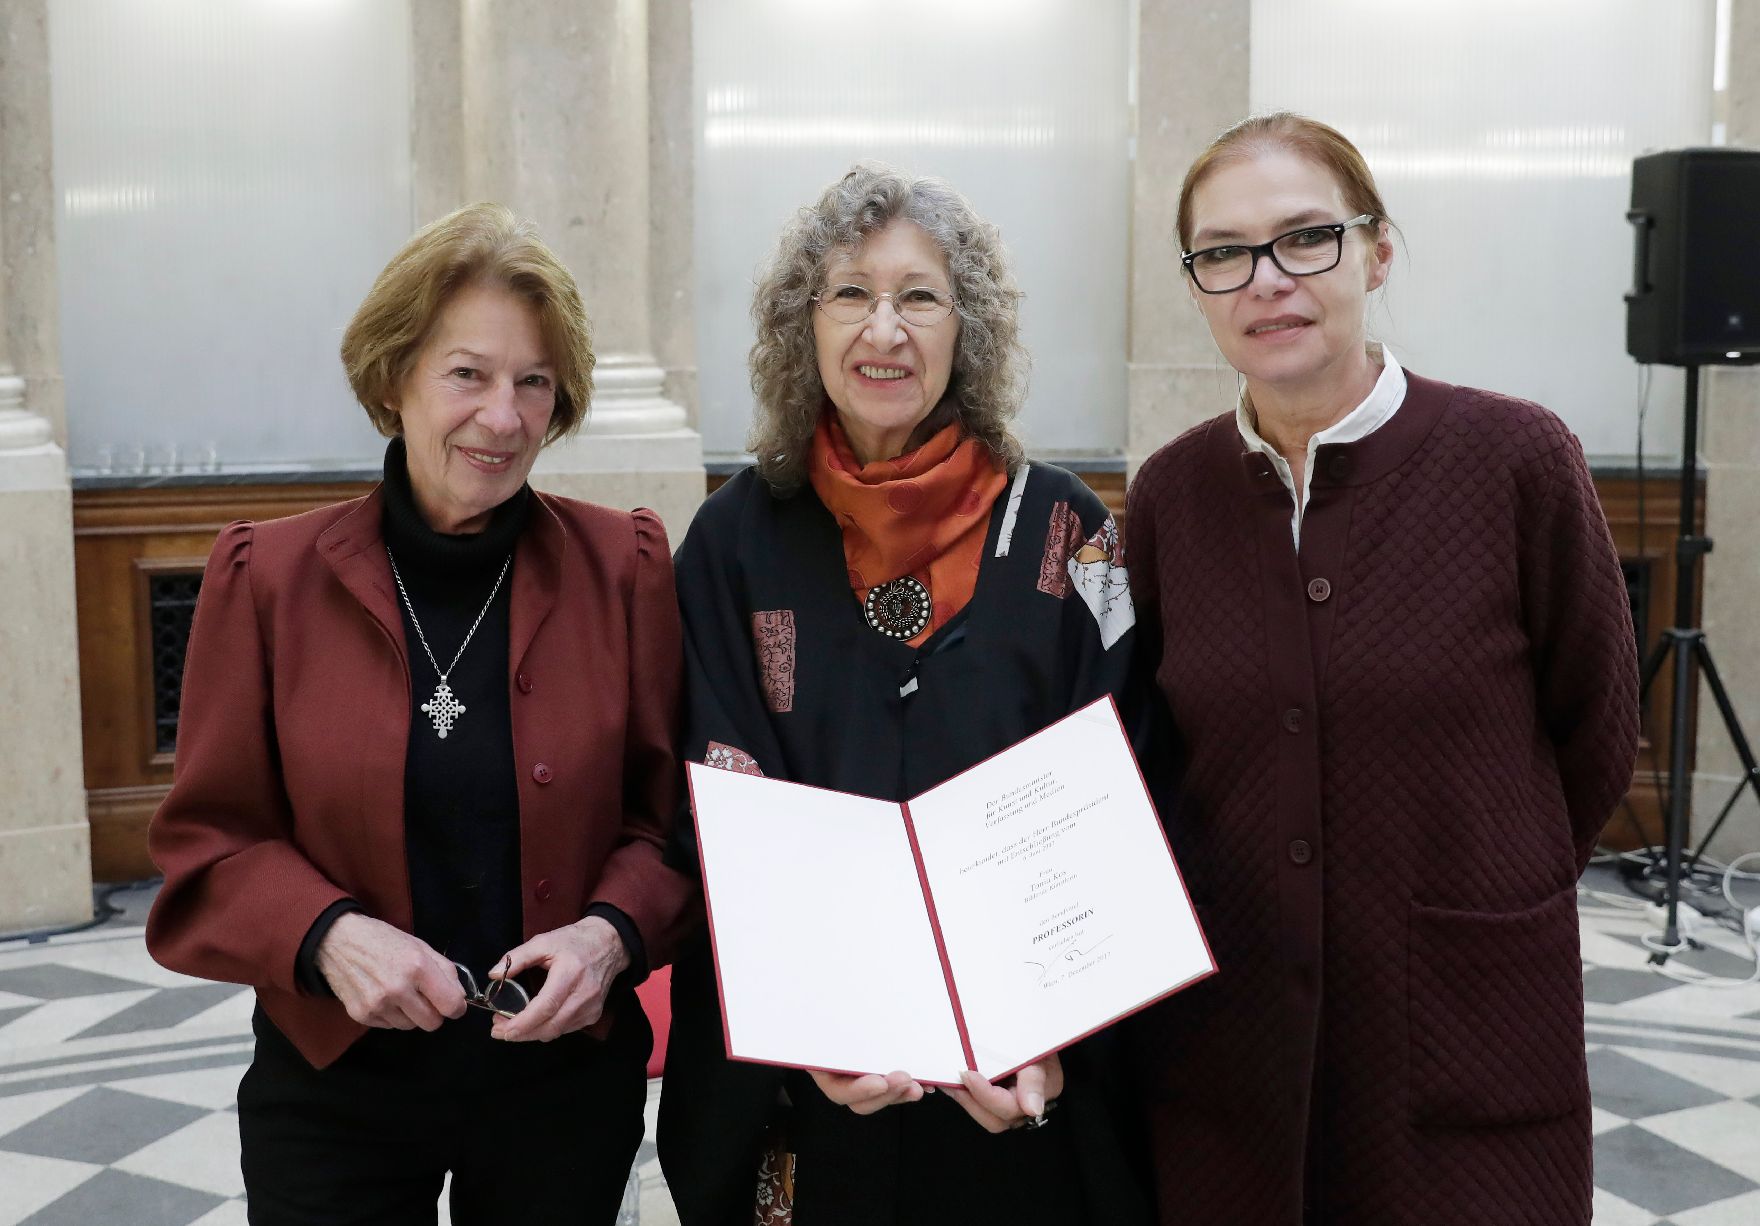 Am 7. Dezember 2017 überreichte Charlotte Sucher (r.) die Urkunde, mit der Tonia Kos (m.) der Berufstitel Professorin verliehen wurde. Im Bild mit Laudatorin Heide Breuer (l.).